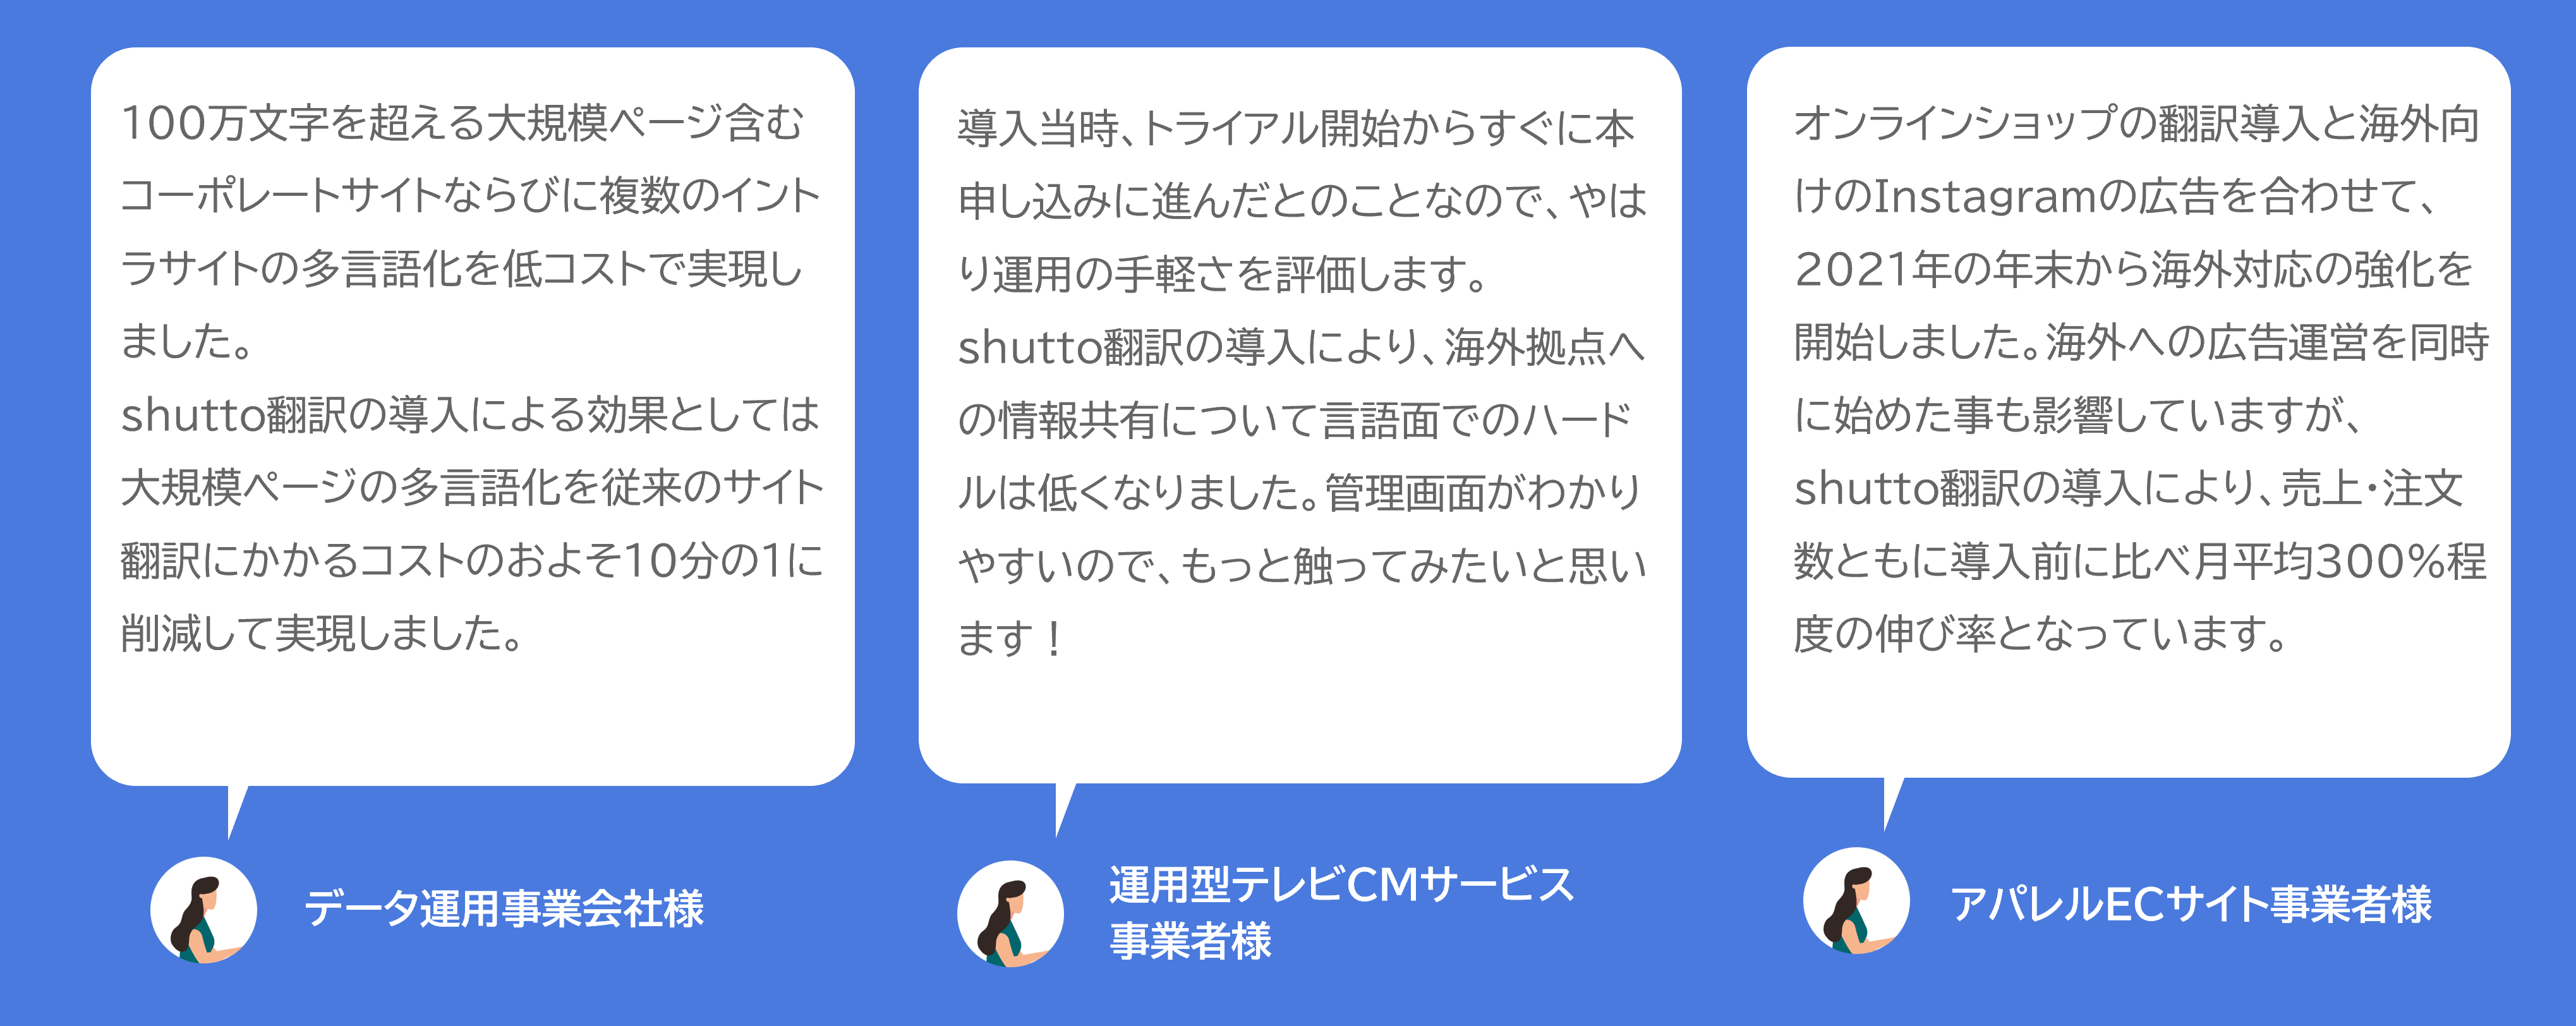 shutto翻訳_事例掲載